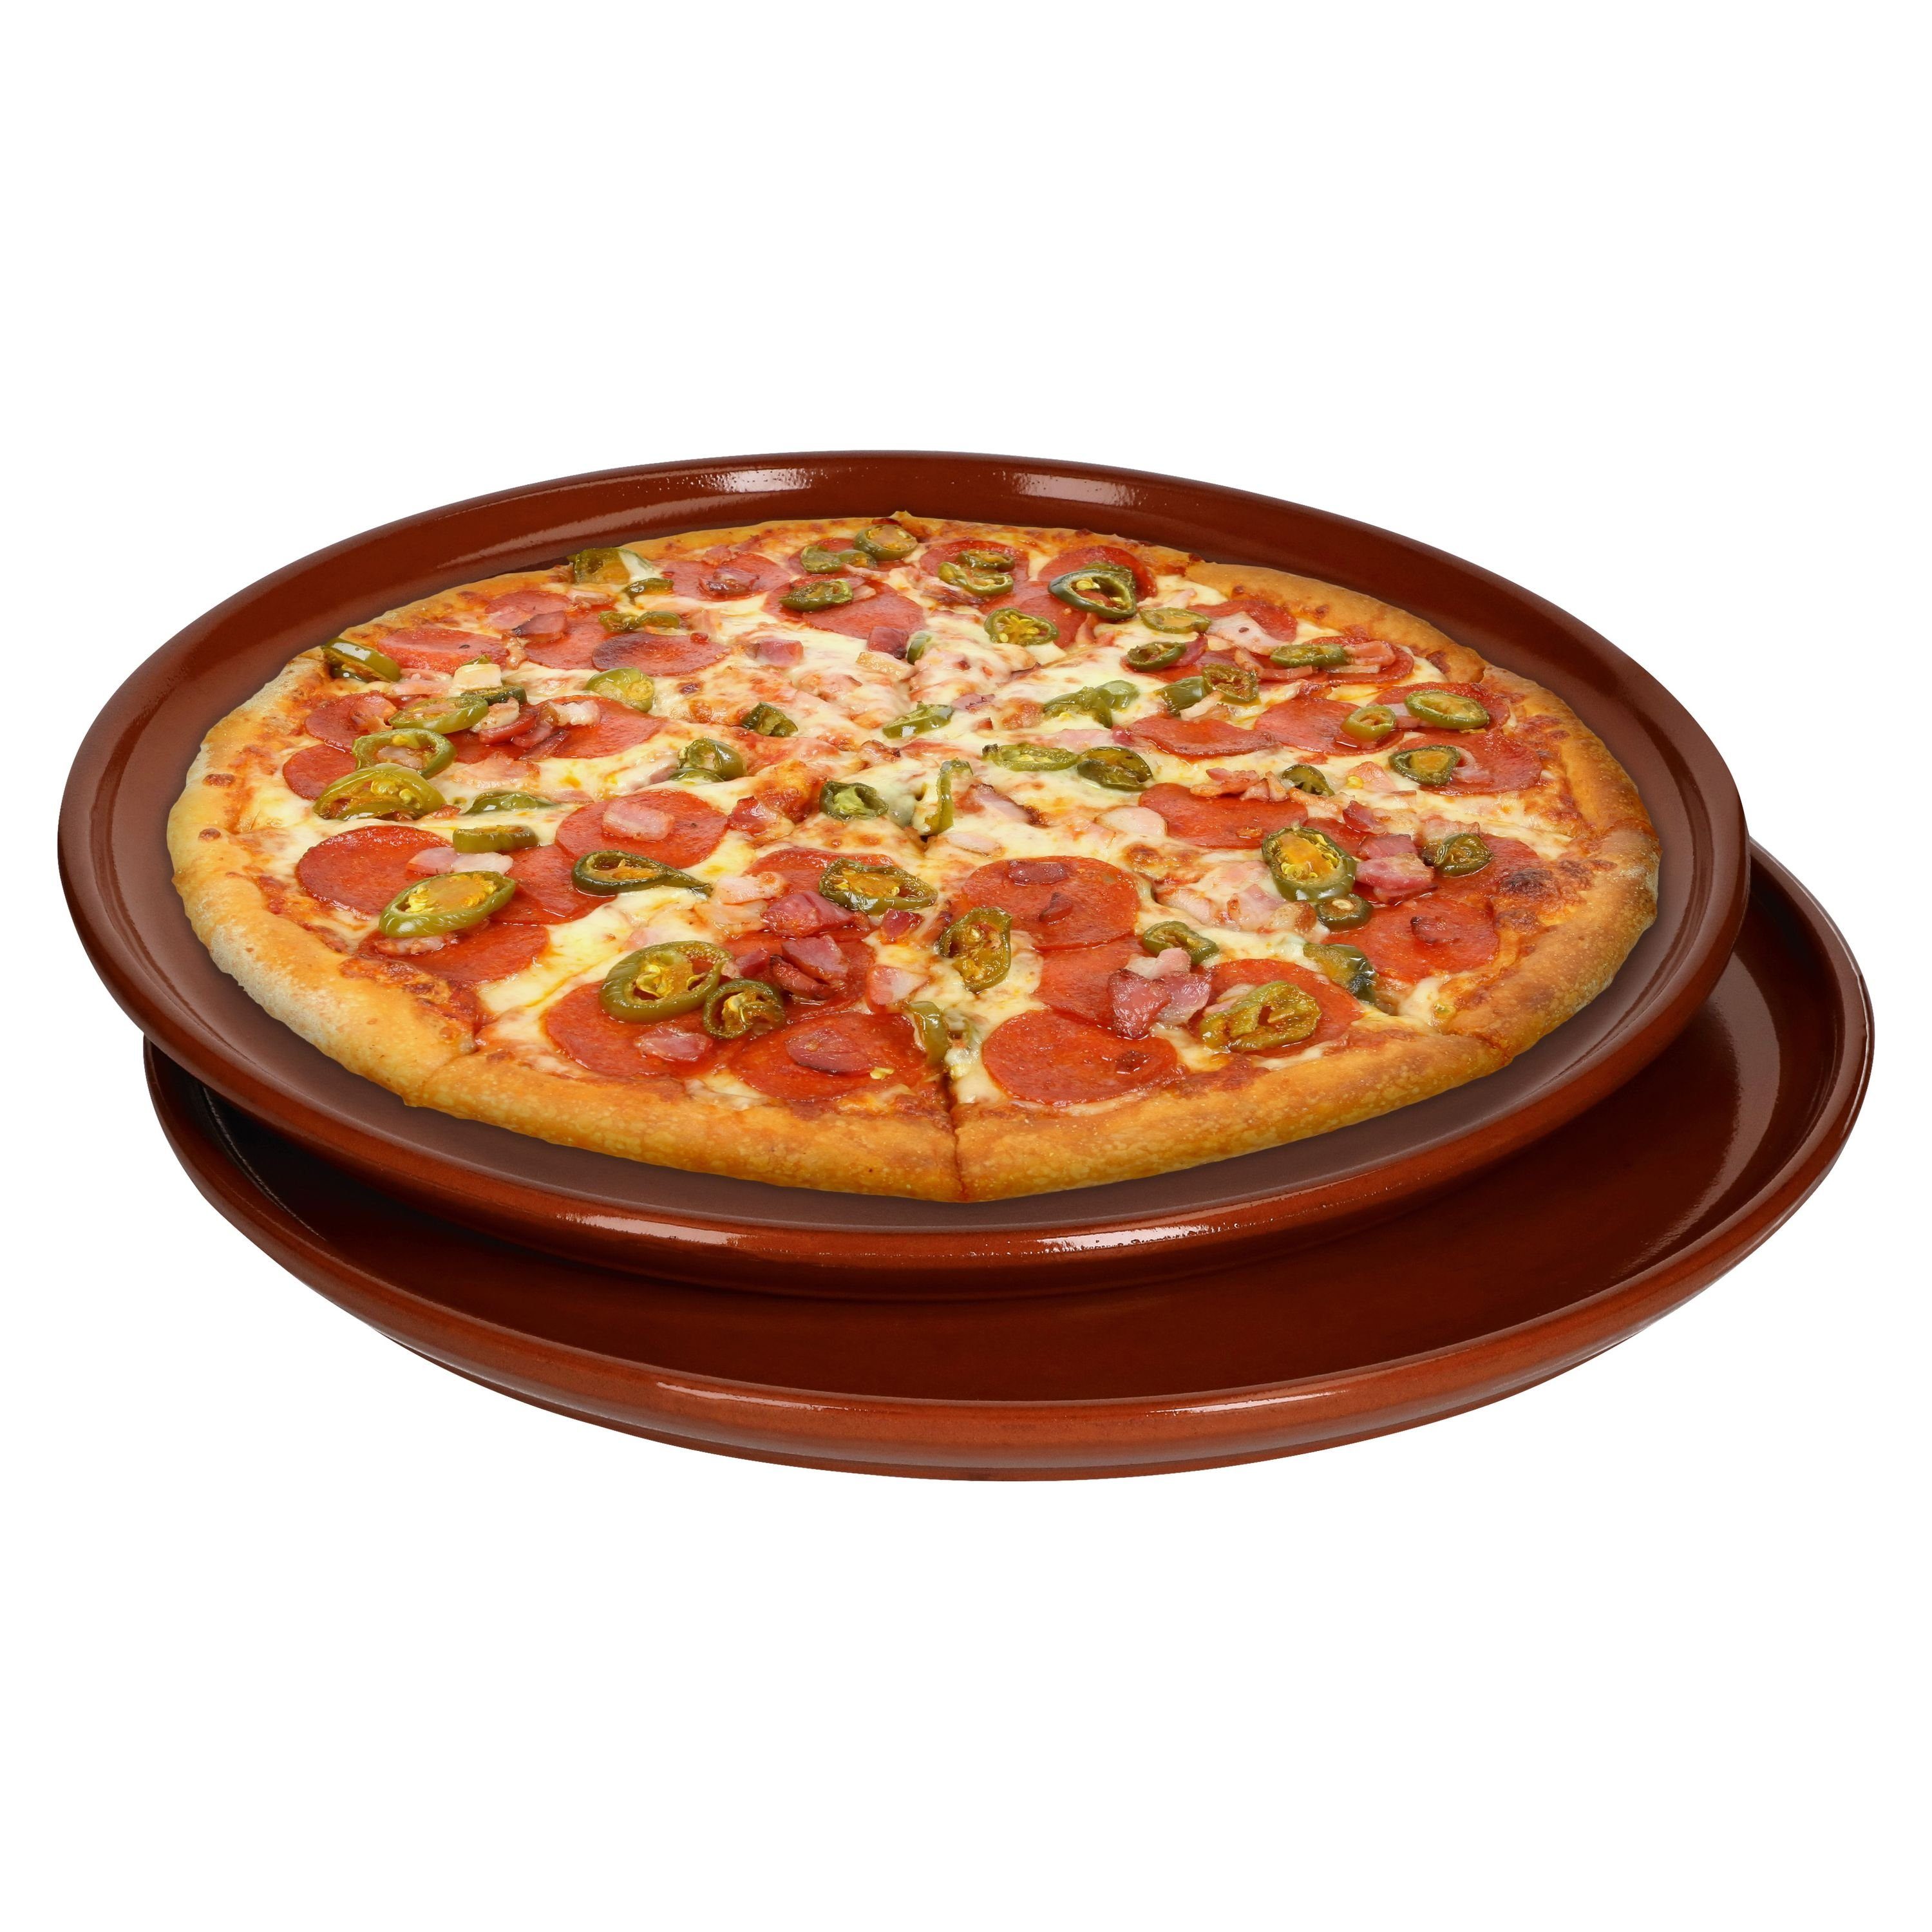 aus MamboCat Pizzateller Ton 33358 - 32cm Pizzateller Set 2er